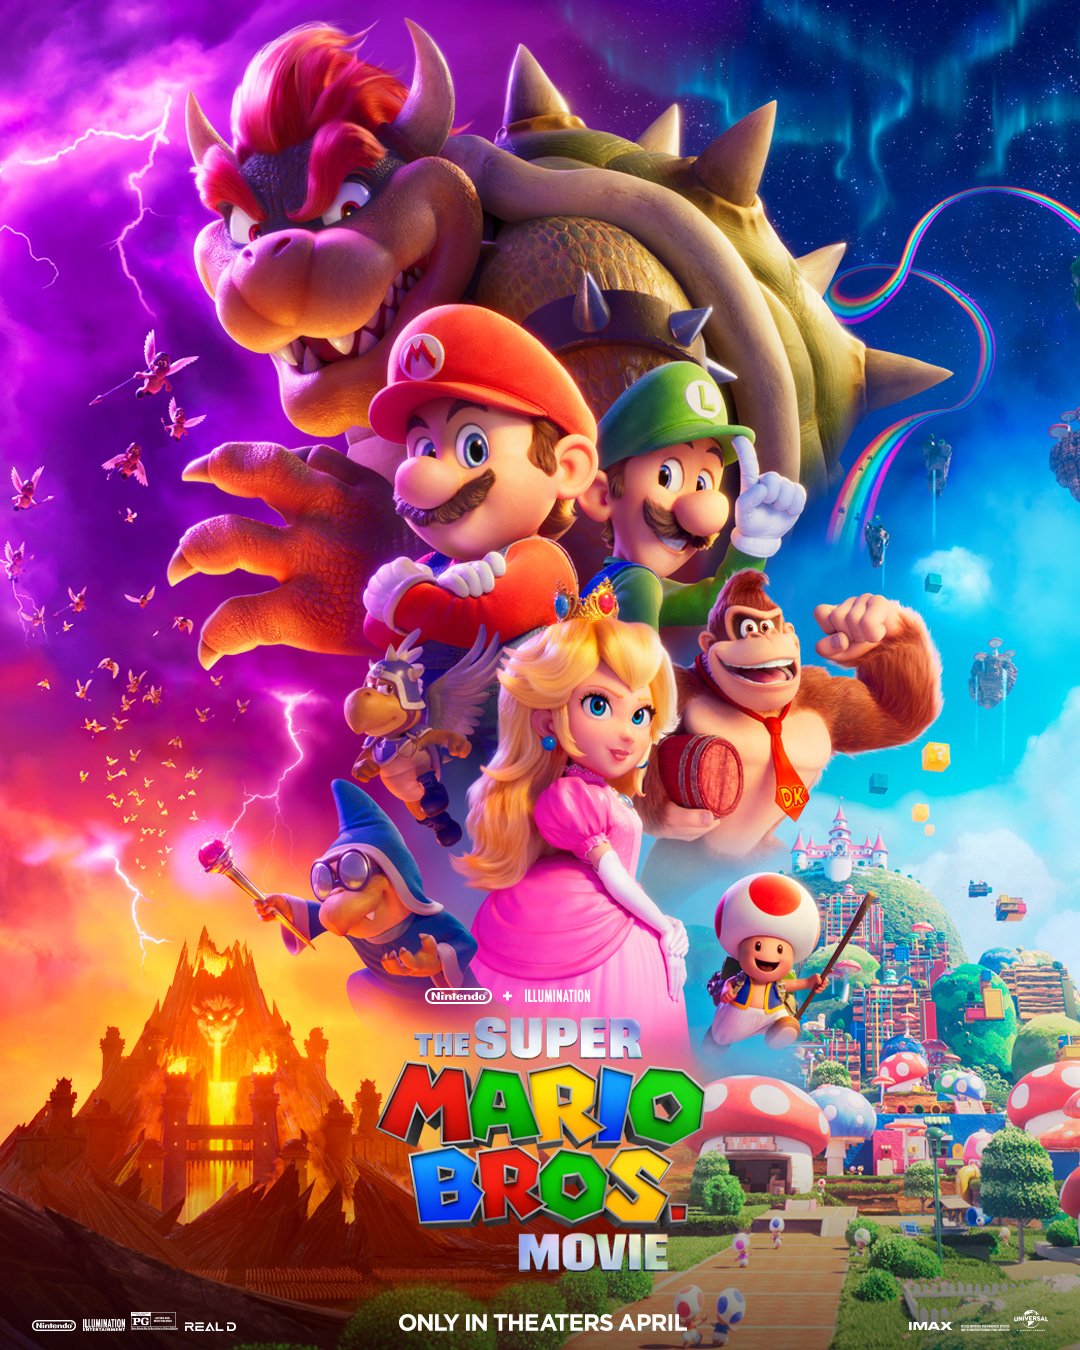 Super Mario Bros. O Filme é publicado completo no Twitter em alta